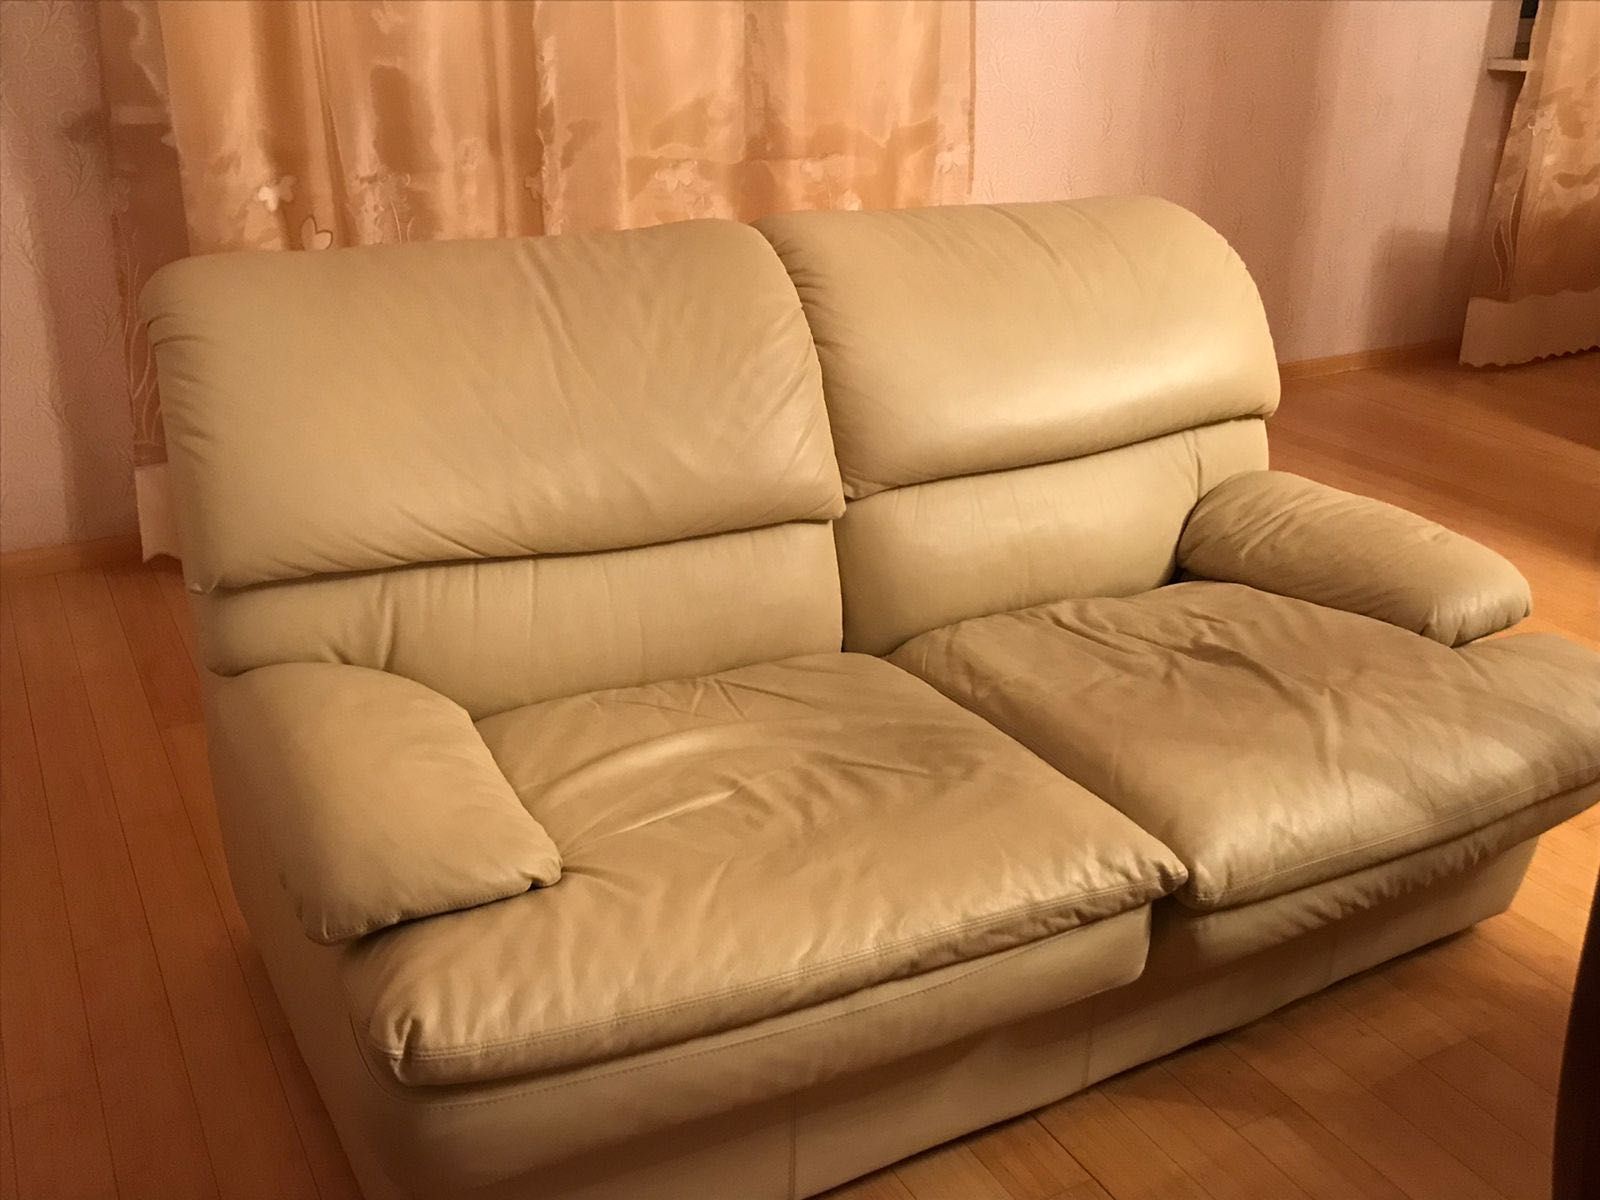 Комплект кожаных диванов и кресла 3+2+1. Элитный производитель, Италия